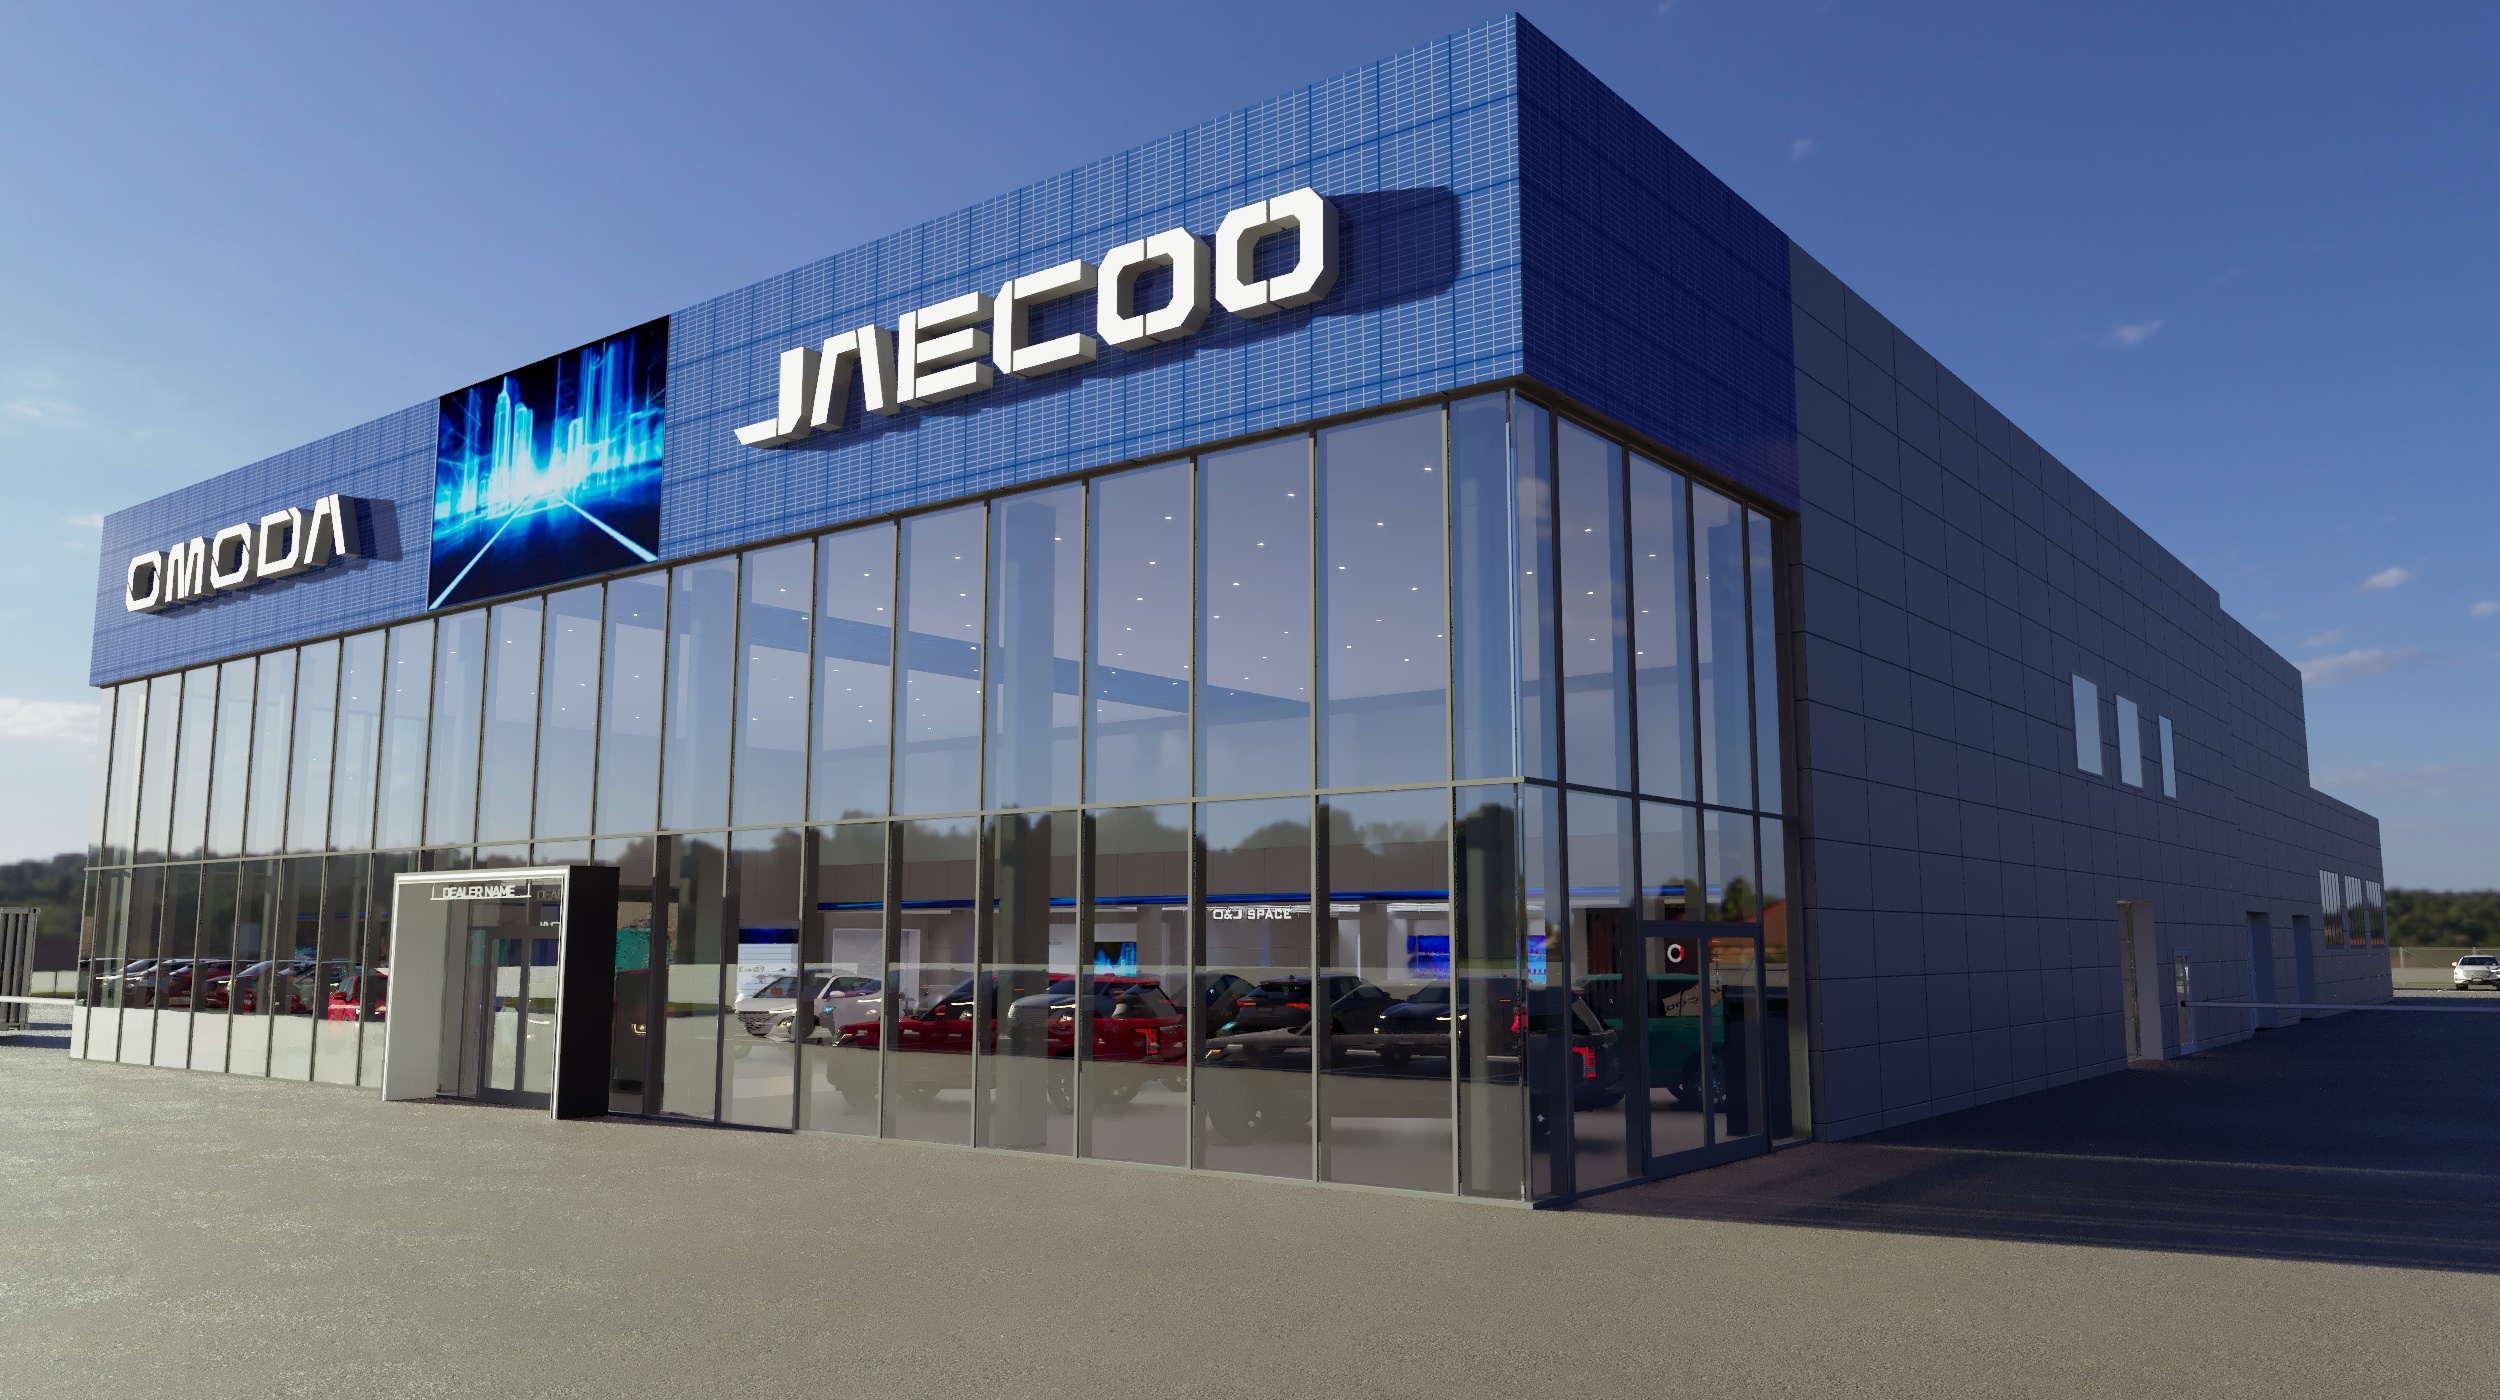 Автобренд JAECOO выйдет на рынок РФ во втором полугодии 2023 года